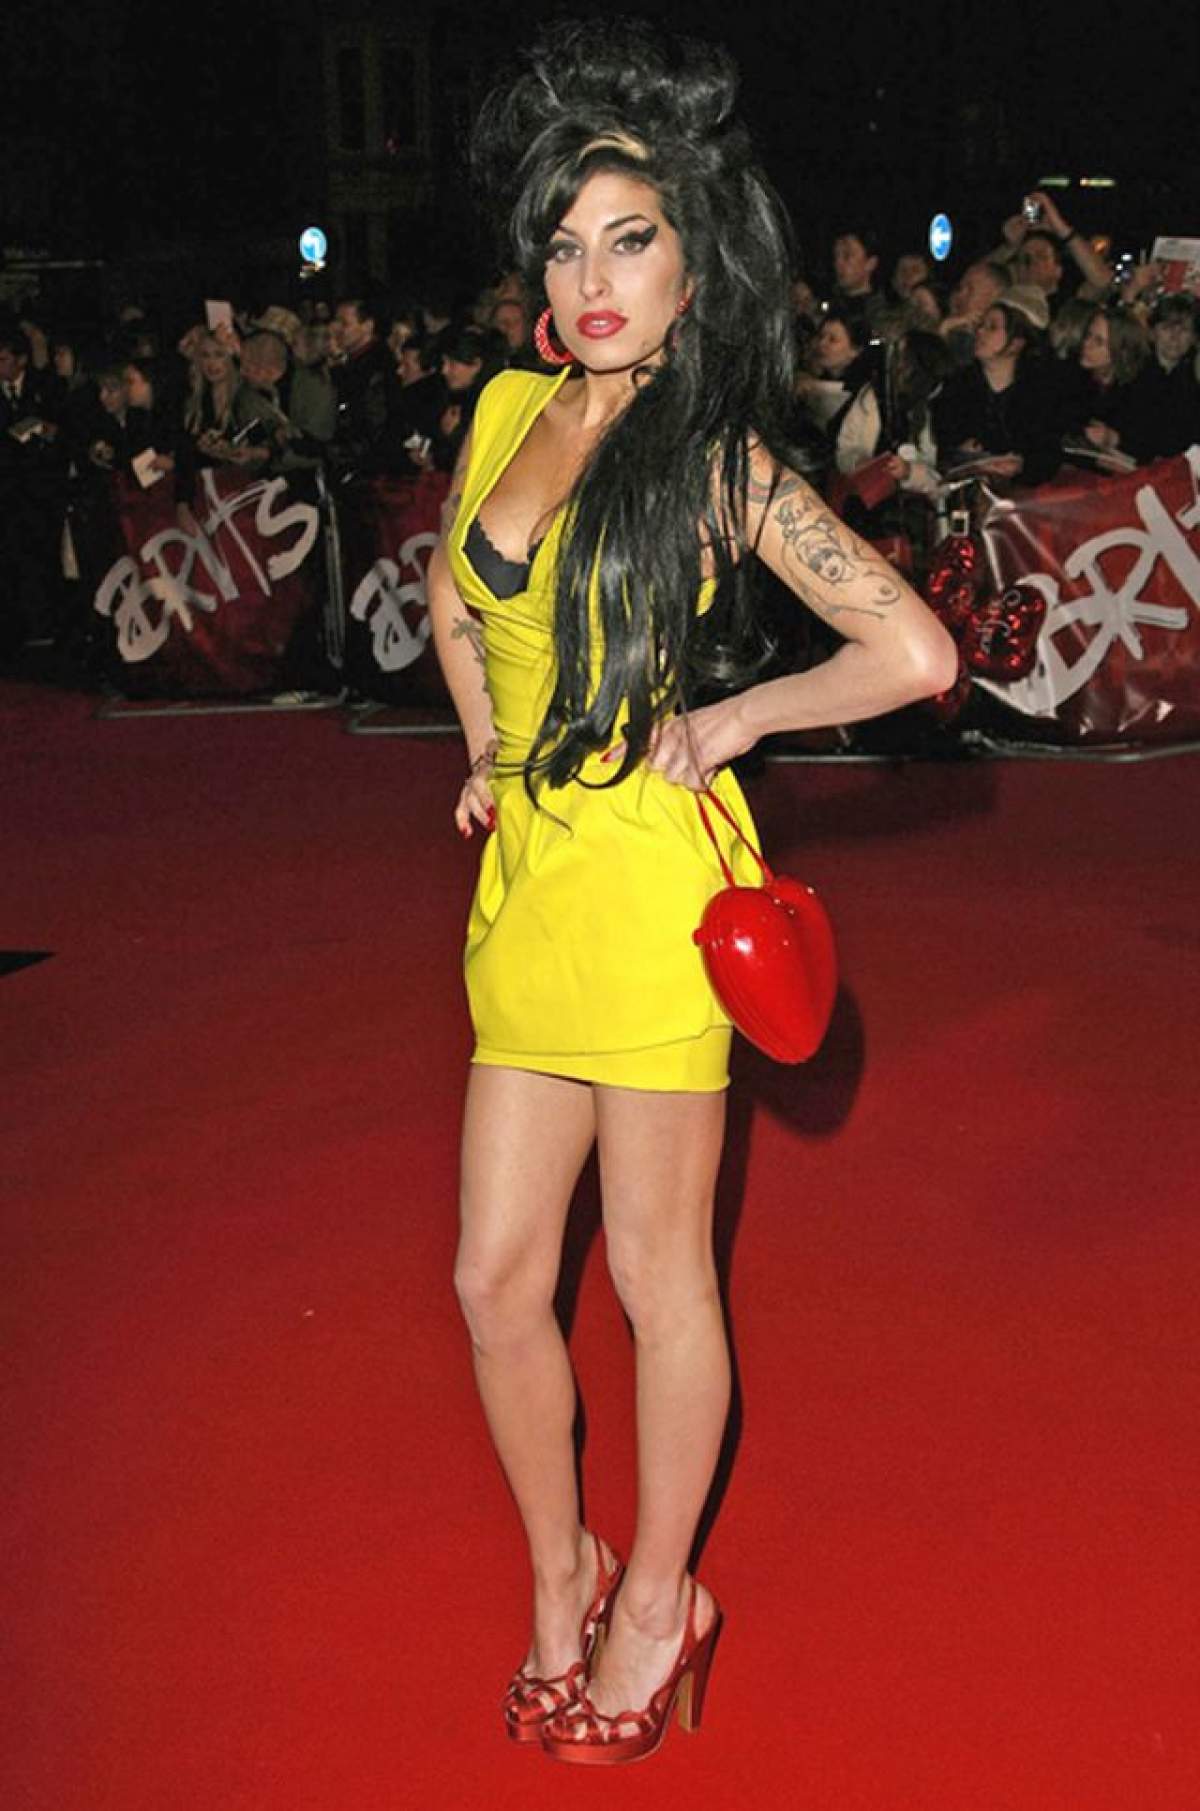 Pe bune? Fotografii cu Amy Winehouse în timp ce făcea sex, scoase la vânzare!